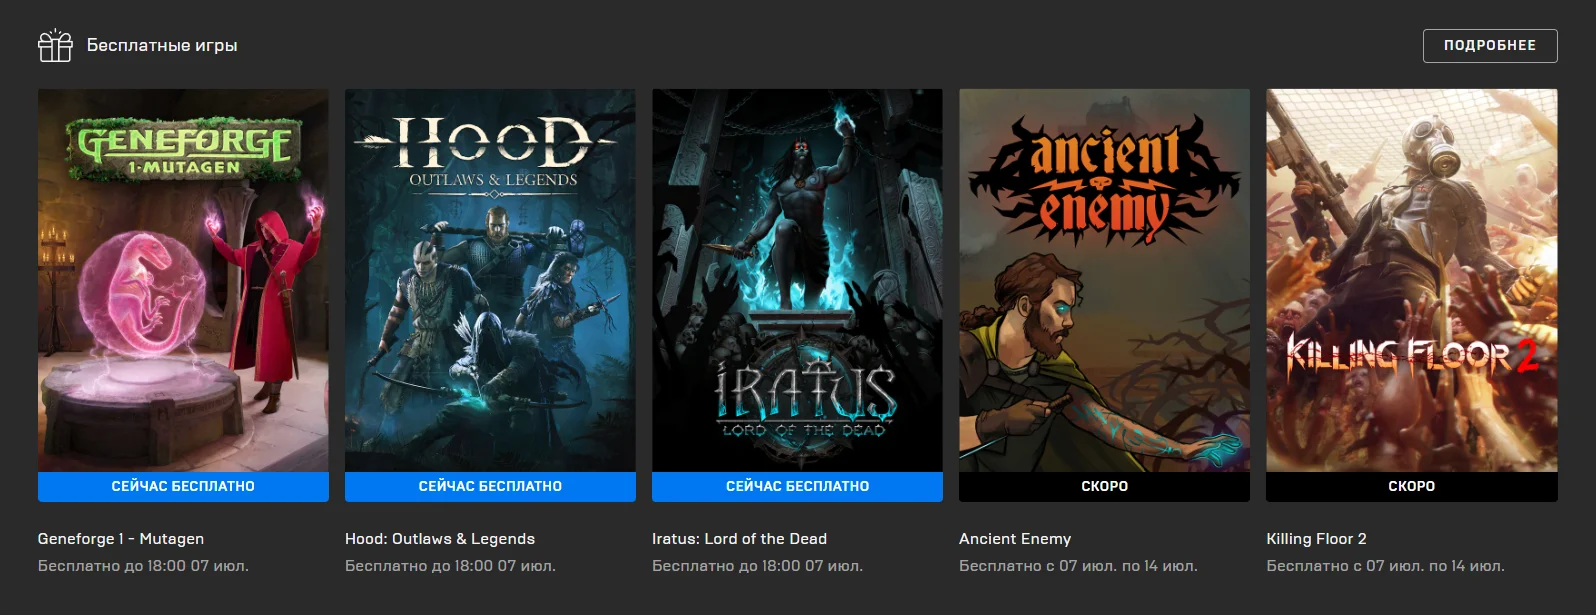 В Epic Games Store раздают сразу три бесплатных игры - фото 1